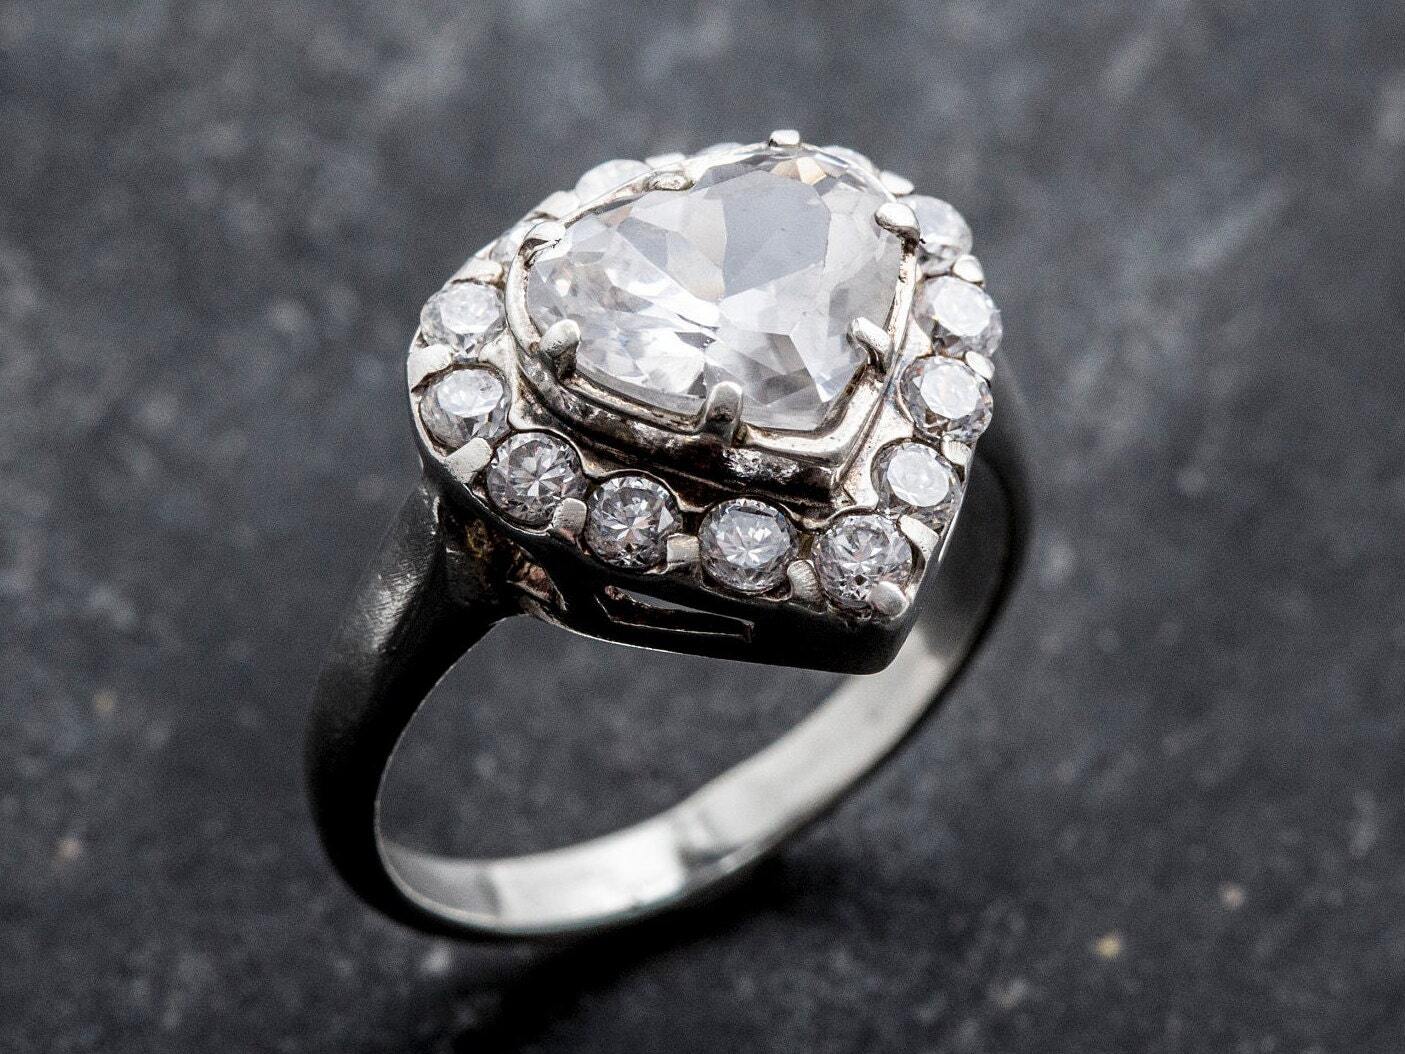 Heart Engagement Ring - White Topaz Ring, Heart Diamond Ring